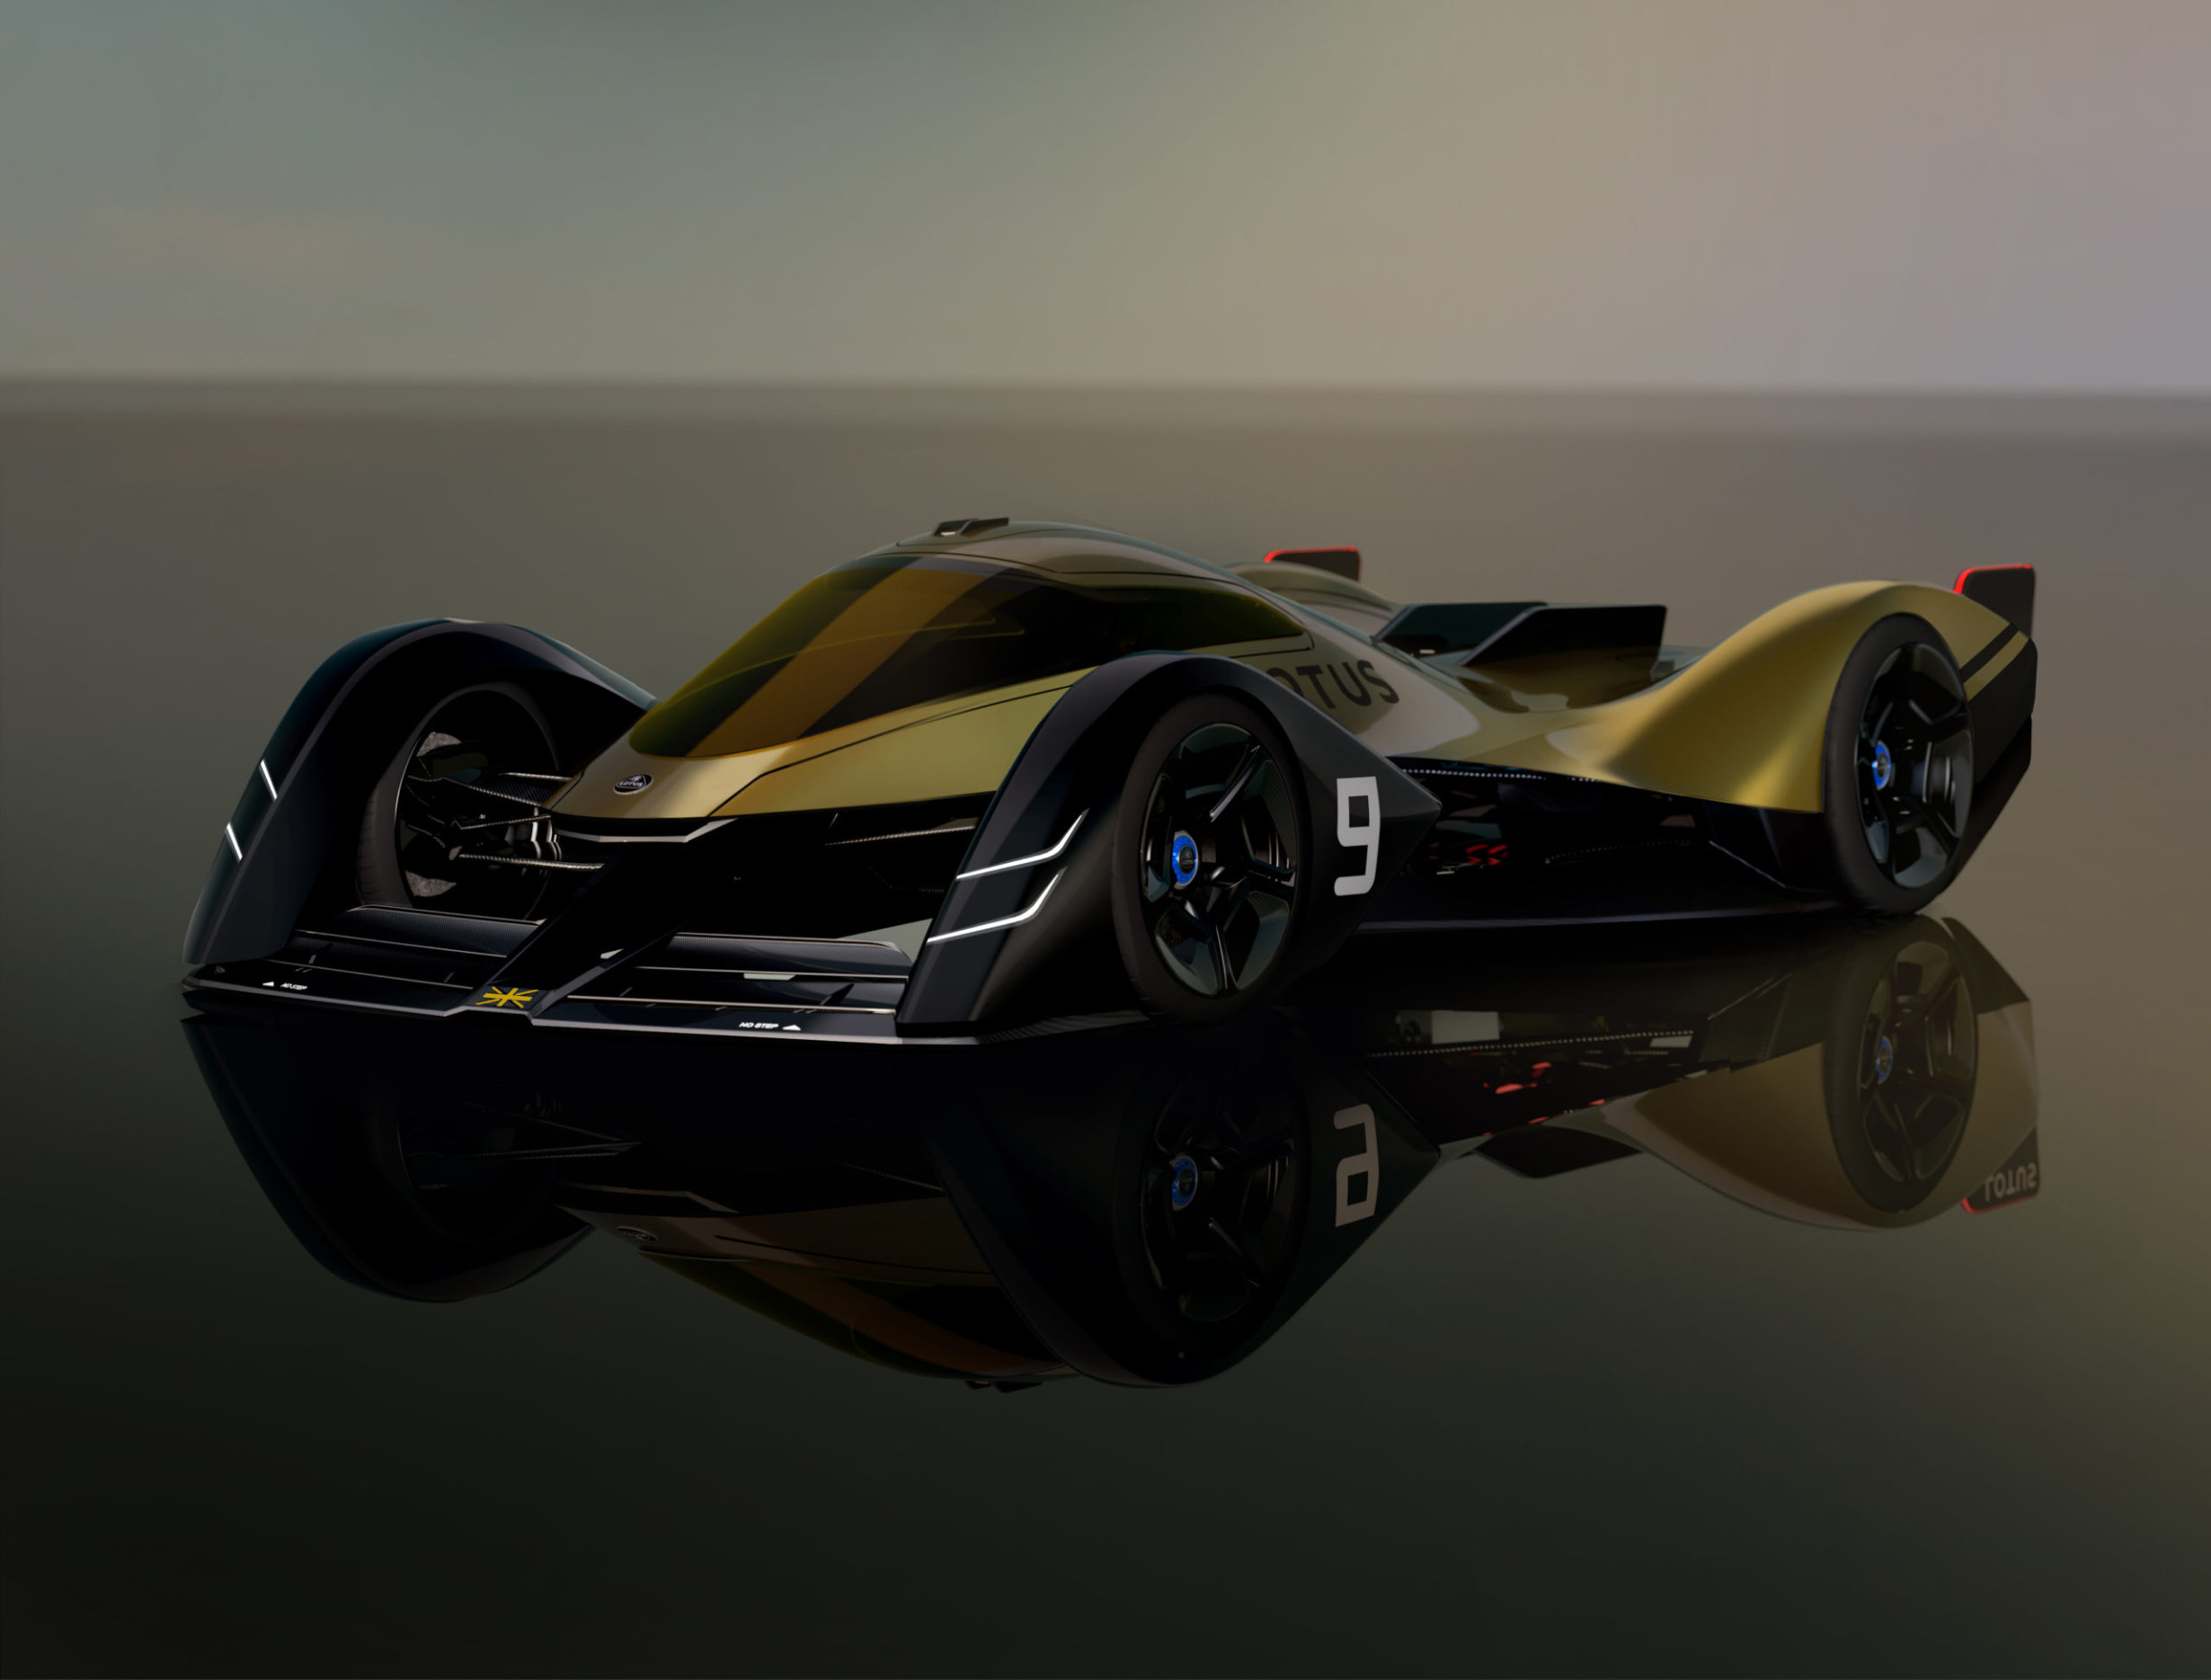 Lotus has presented a concept of electric hypercar E-R9